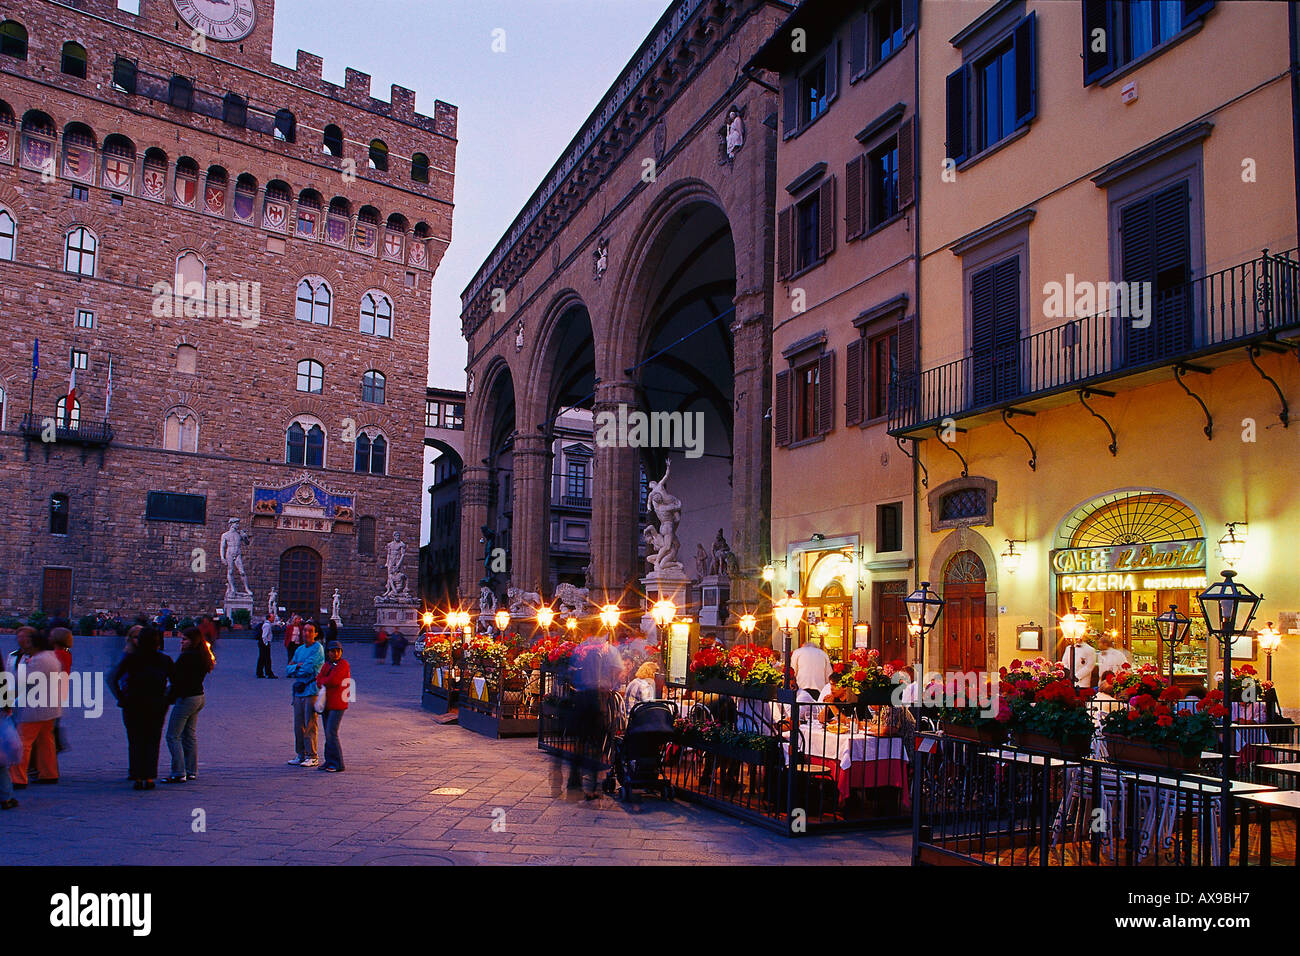 Palazzo Vecchio, Piazza della Signoria, Florence Tuscany, Italy Stock Photo